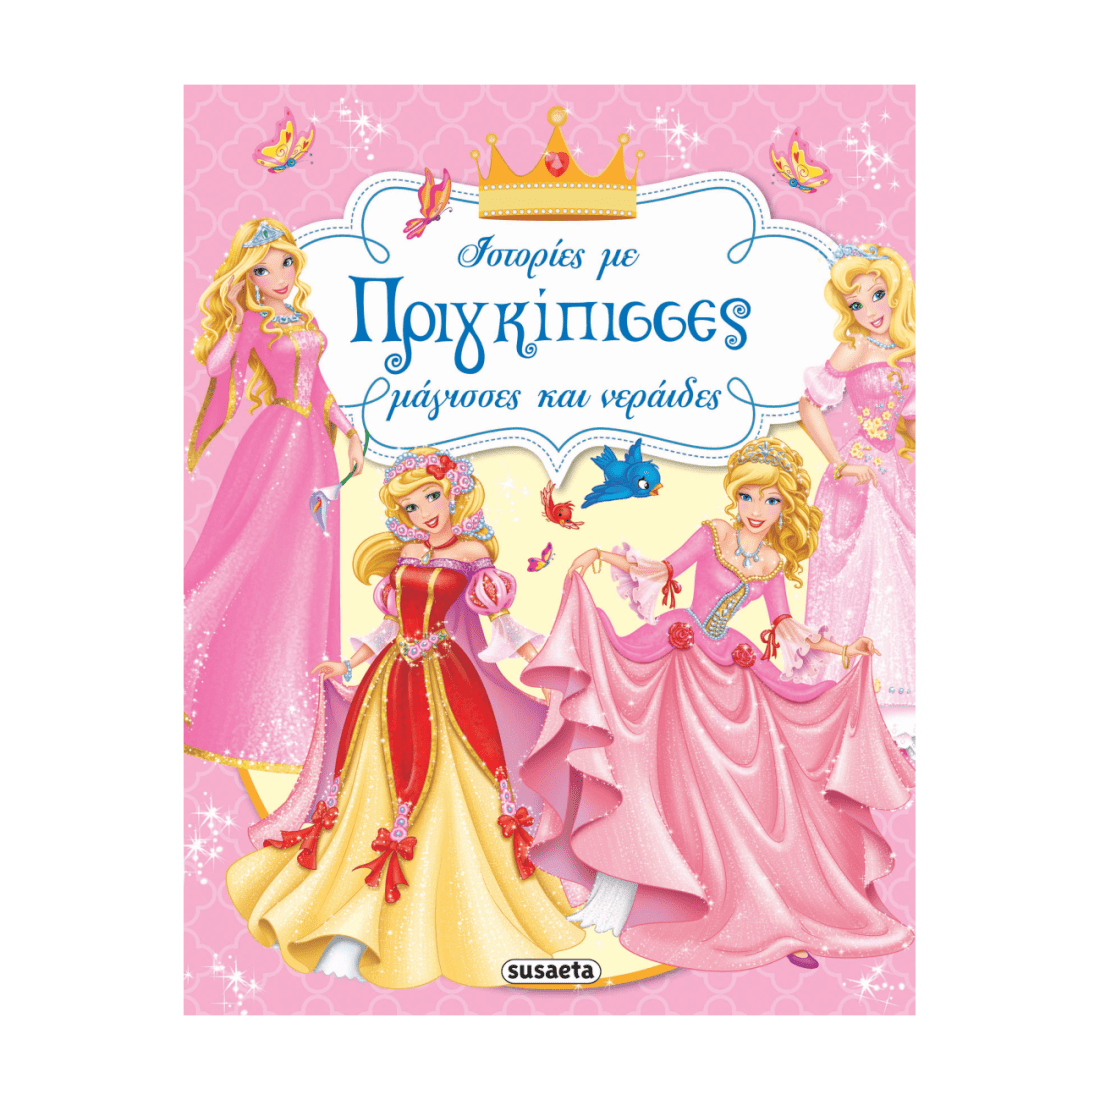 Ιστορίες Με Πριγκίπισσες, Μάγισσες Και Νεράιδες